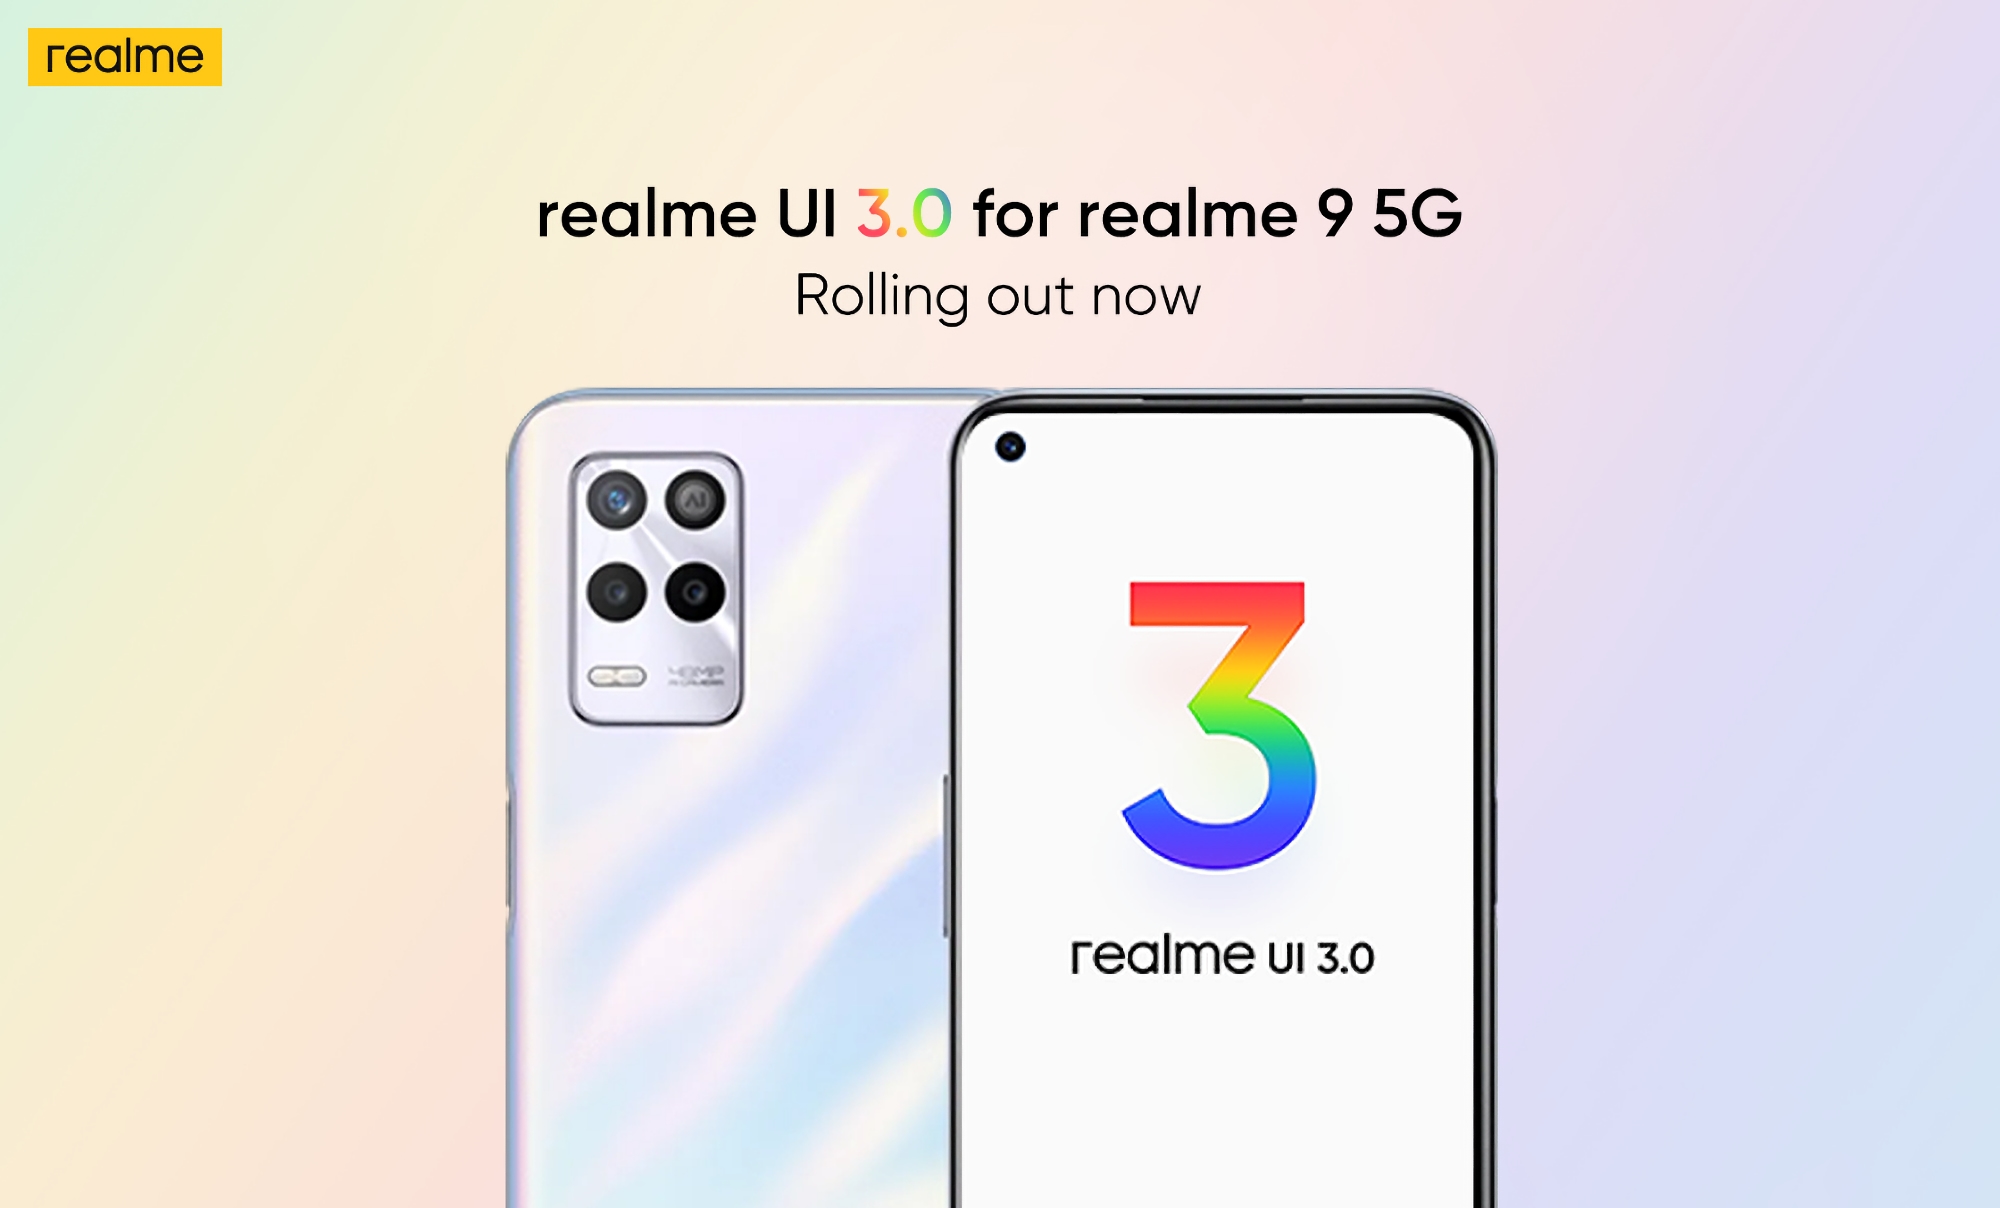 realme 9 5G ma stabilną wersję realme UI 3.0 opartą na systemie Android 12